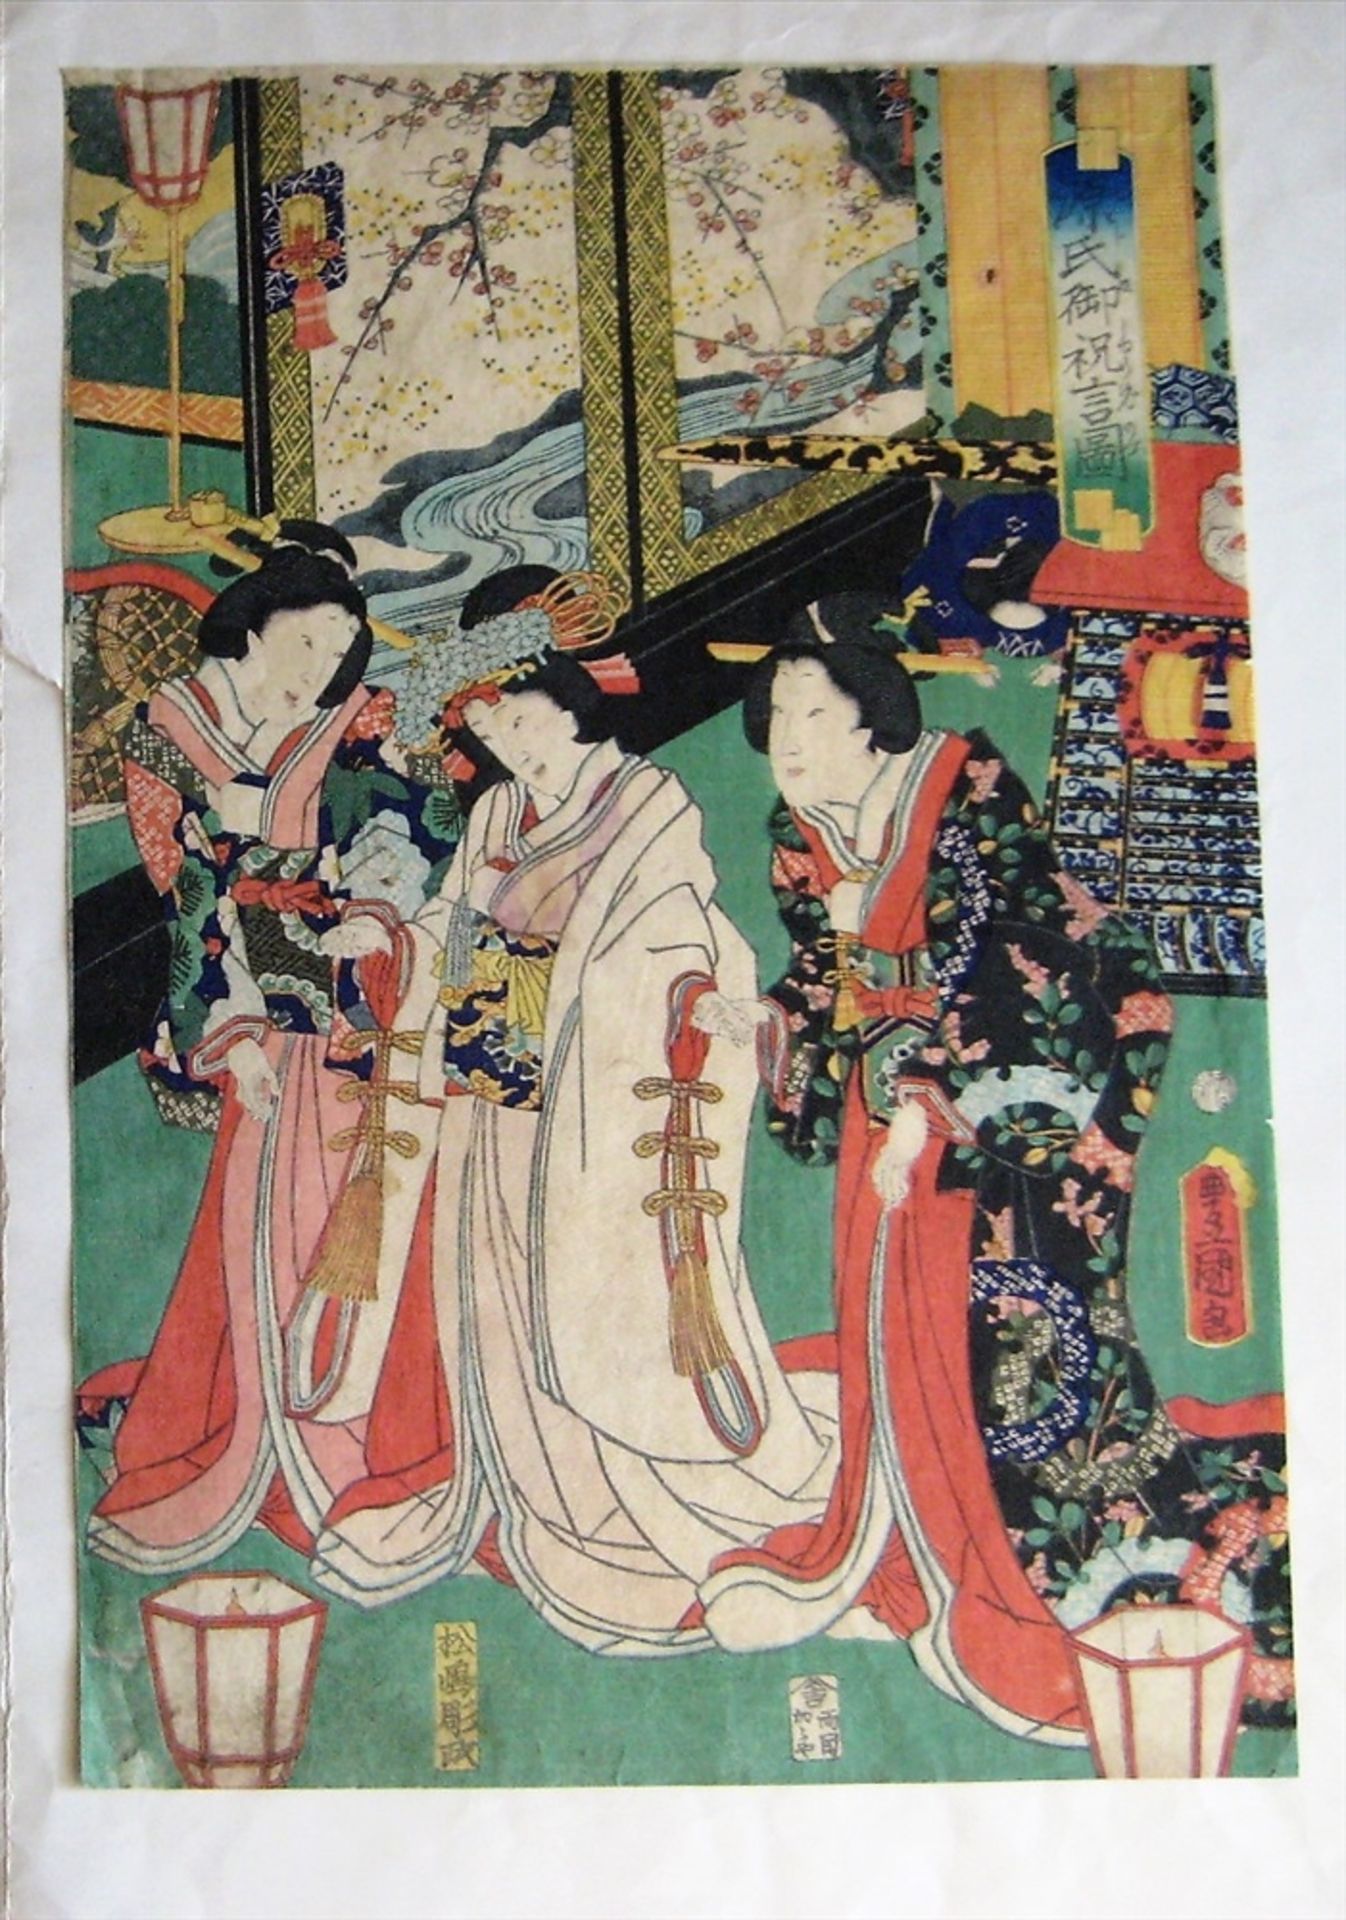 3 Farbholzschnitte, Japan, 19. Jahrhundert, Tryptichon, "Personen am Hof", sign., 35,5 x 24,5 cm, - Bild 4 aus 4